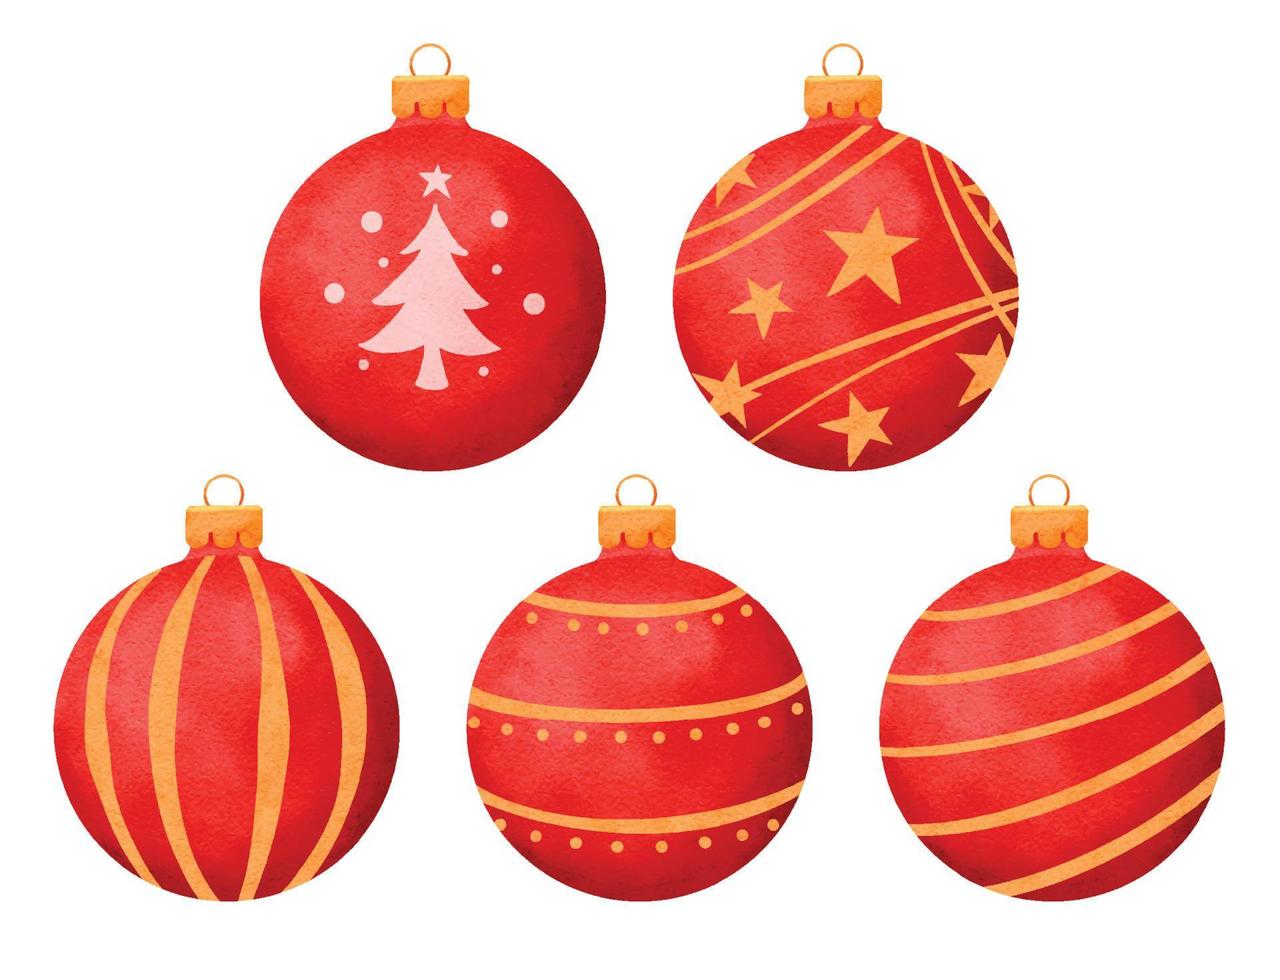 rode kerstballen aquarel stijl decoratie geïsoleerd op een witte achtergrond. vector